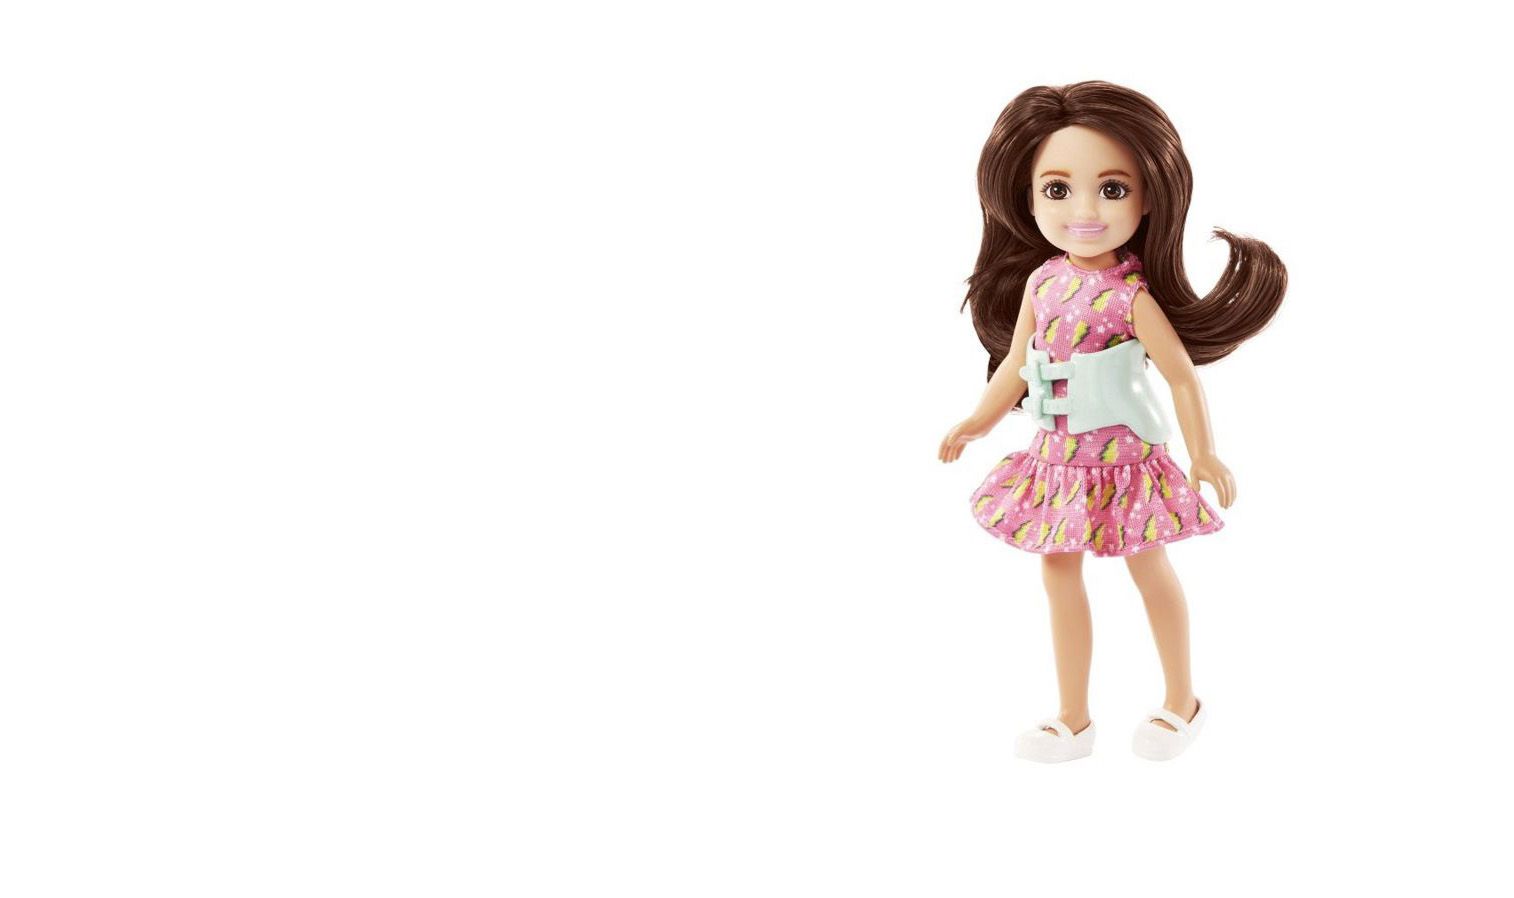 En dukke med langt, mørkt hår, rosa kjole og et hvitt ryggkorsett rundt livet står på en hvit bakgrunn.